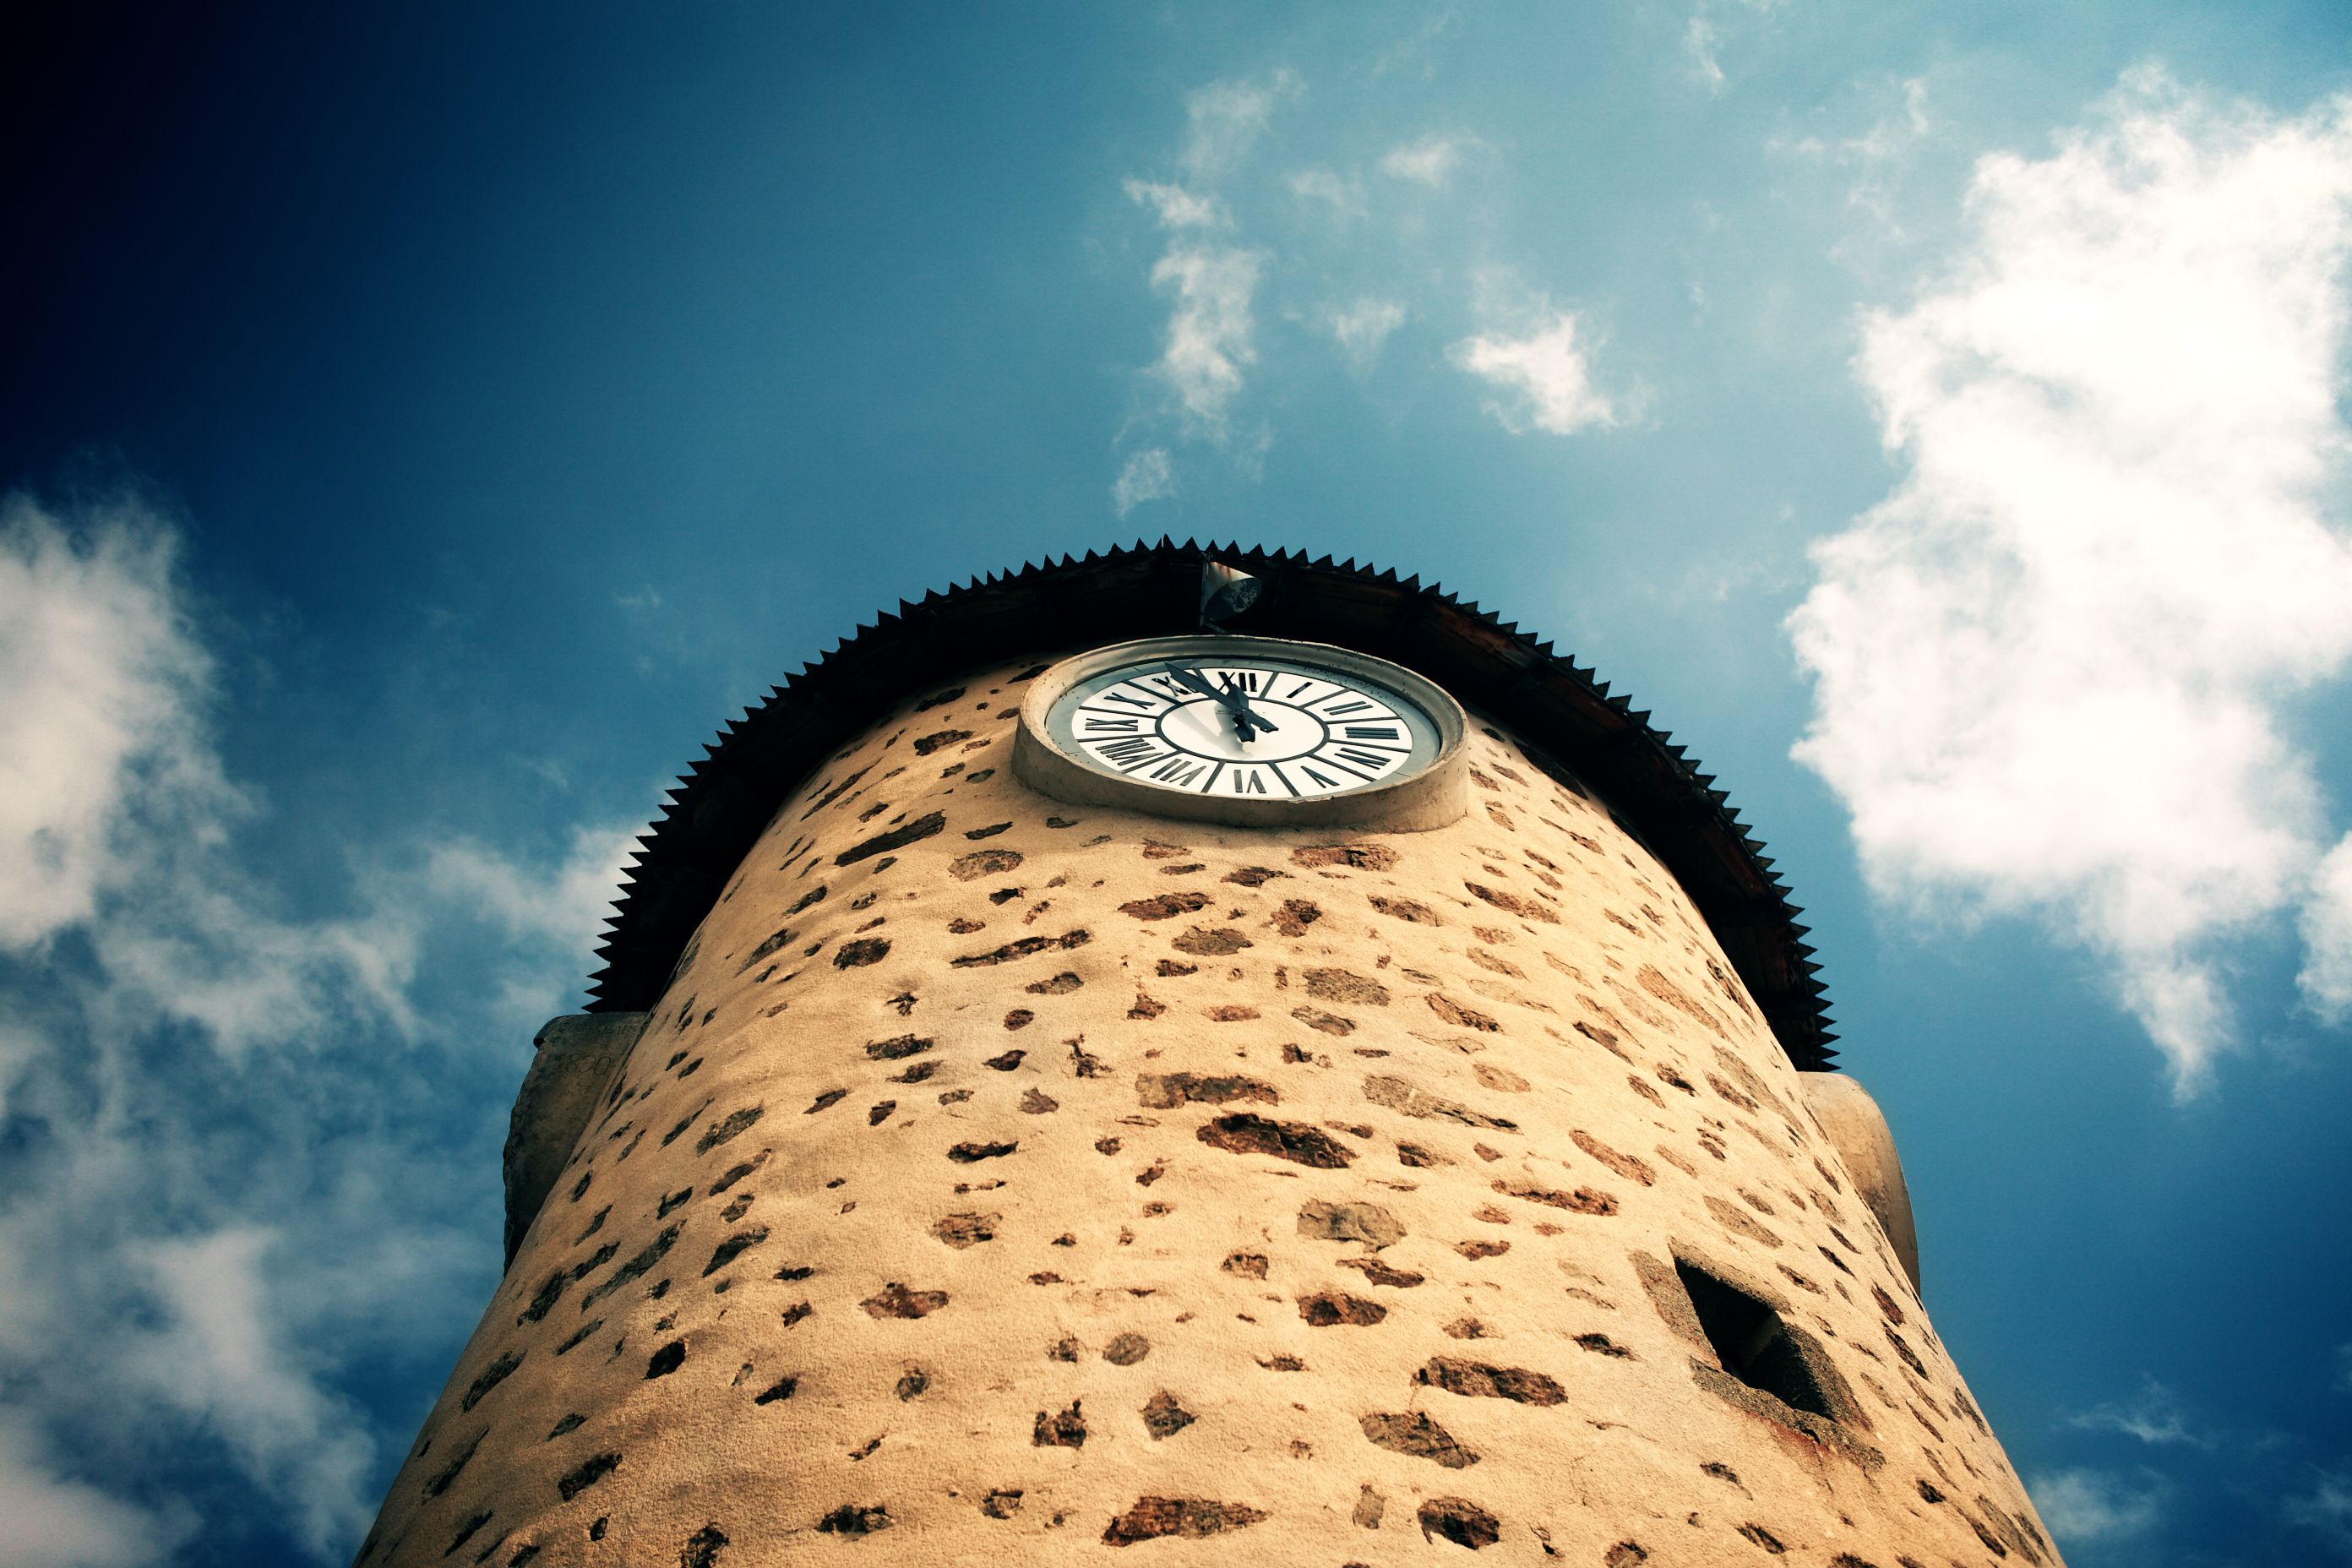 La tour de l'horloge © Communauté de Communes Creuse Grand Sud, R. Evrard